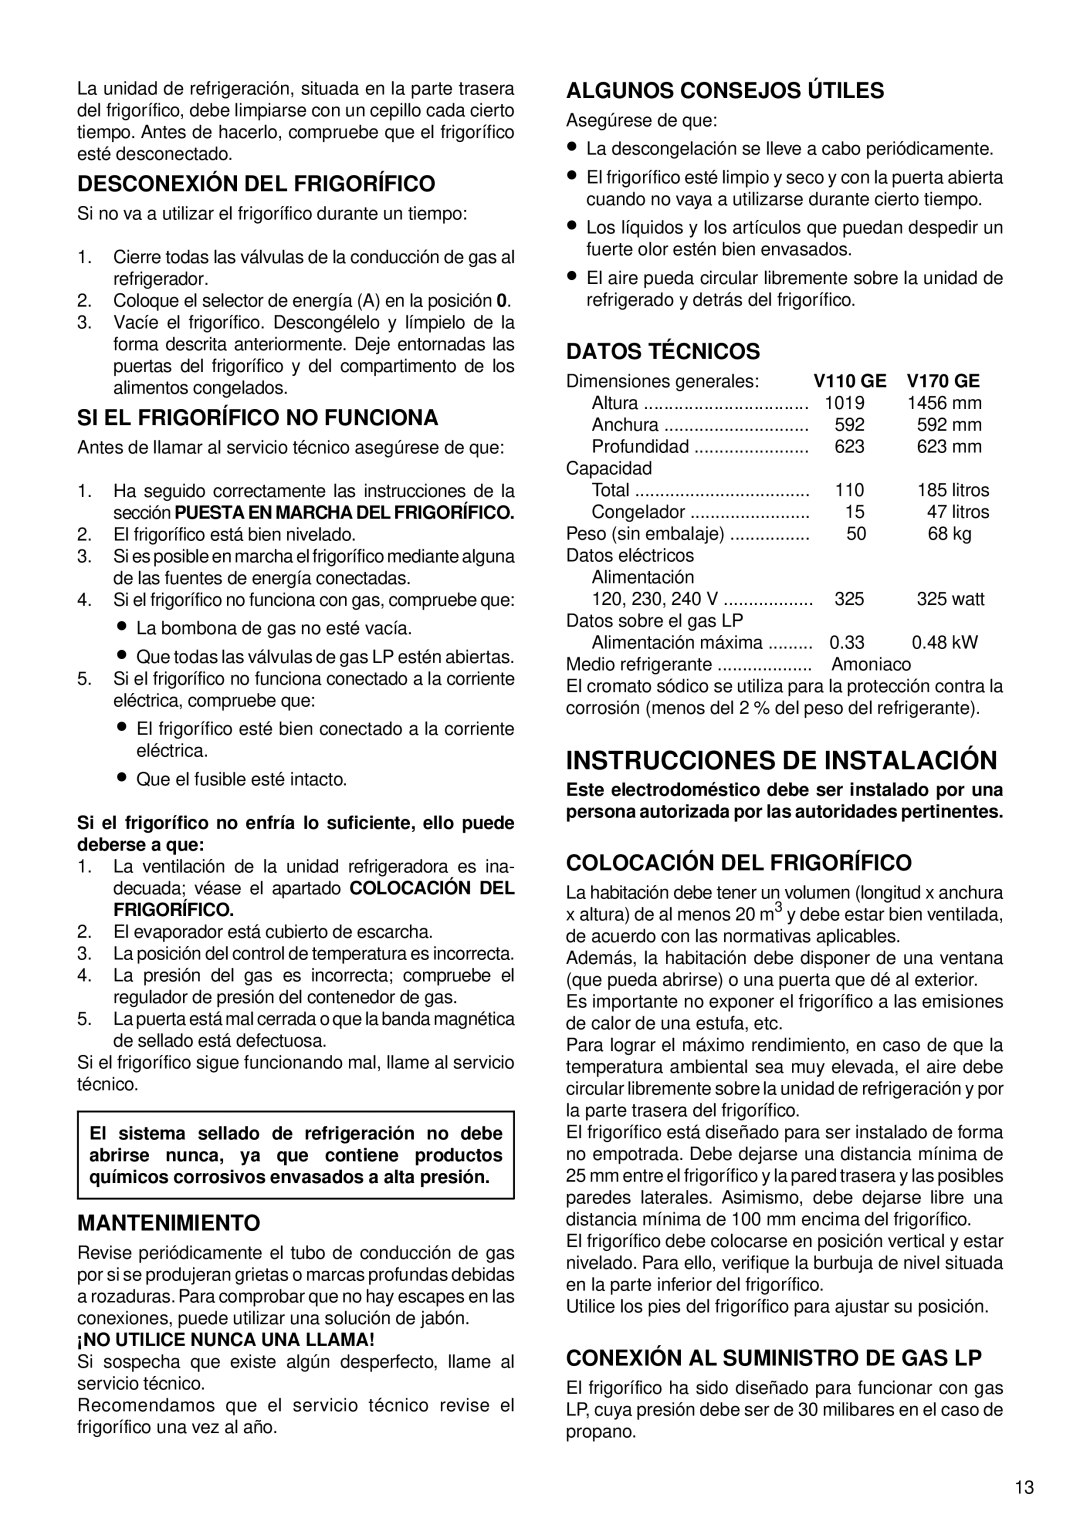 Sibir Optics RA 1-D, RM 1-D manual Instrucciones De Instalación, Desconexión Del Frigorífico, Si El Frigorífico No Funciona 